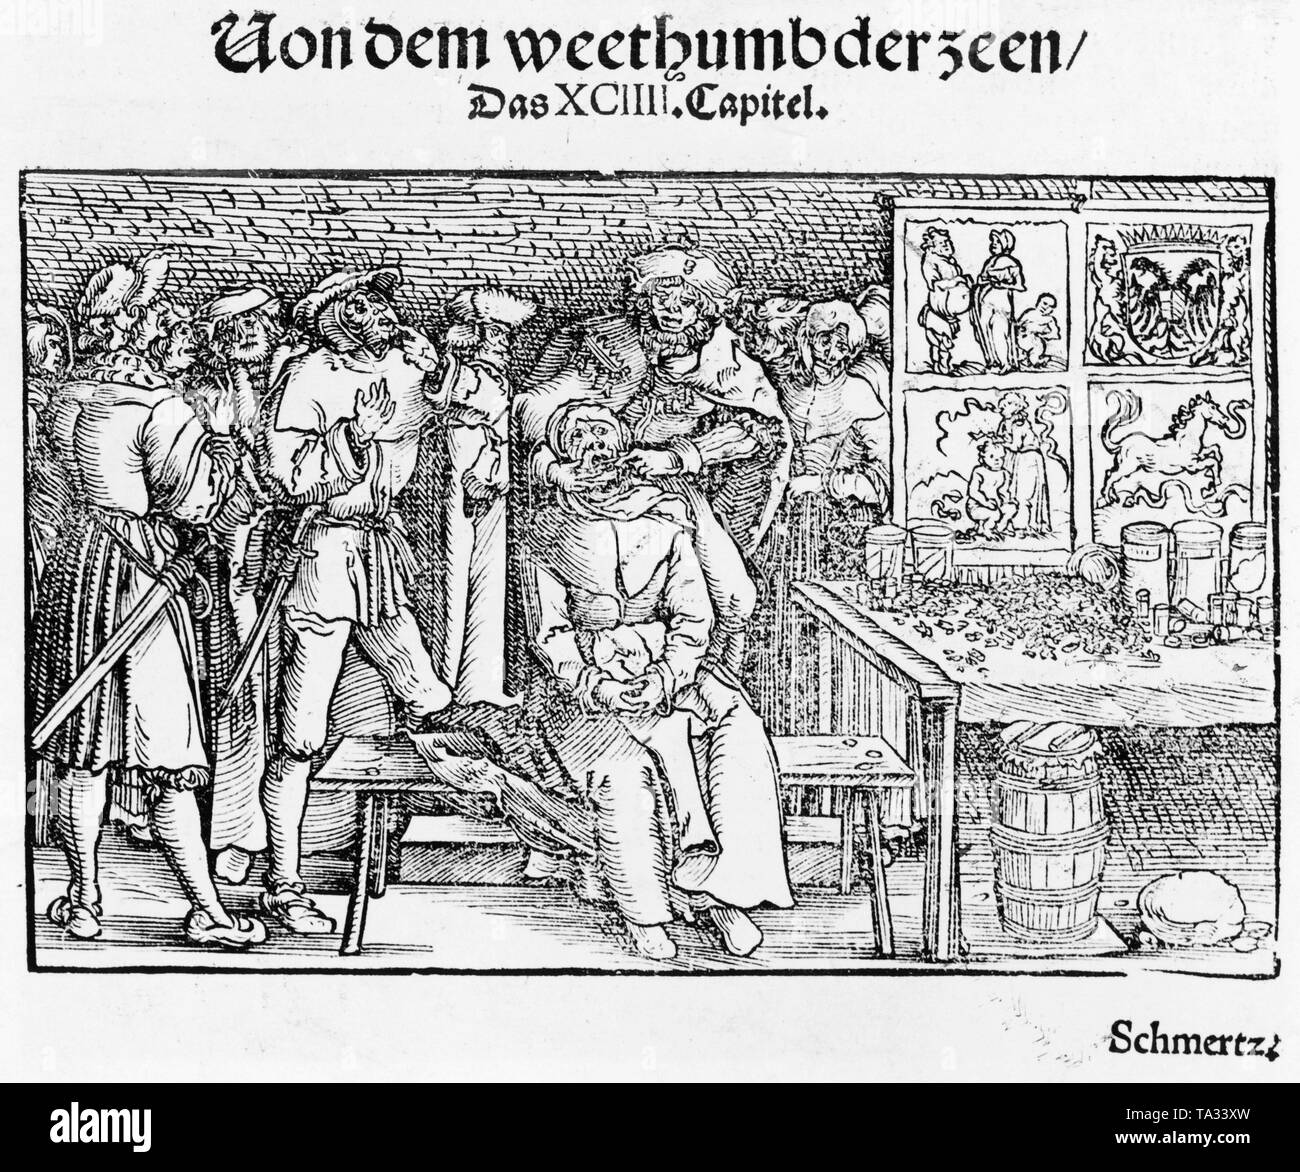 Patient is being treated by a dentist. Above the picture is written:  'Von dem weethumbder zeen/ Das XCIIII. (94.)Capitel.' Undated photo, around 1550. Stock Photo